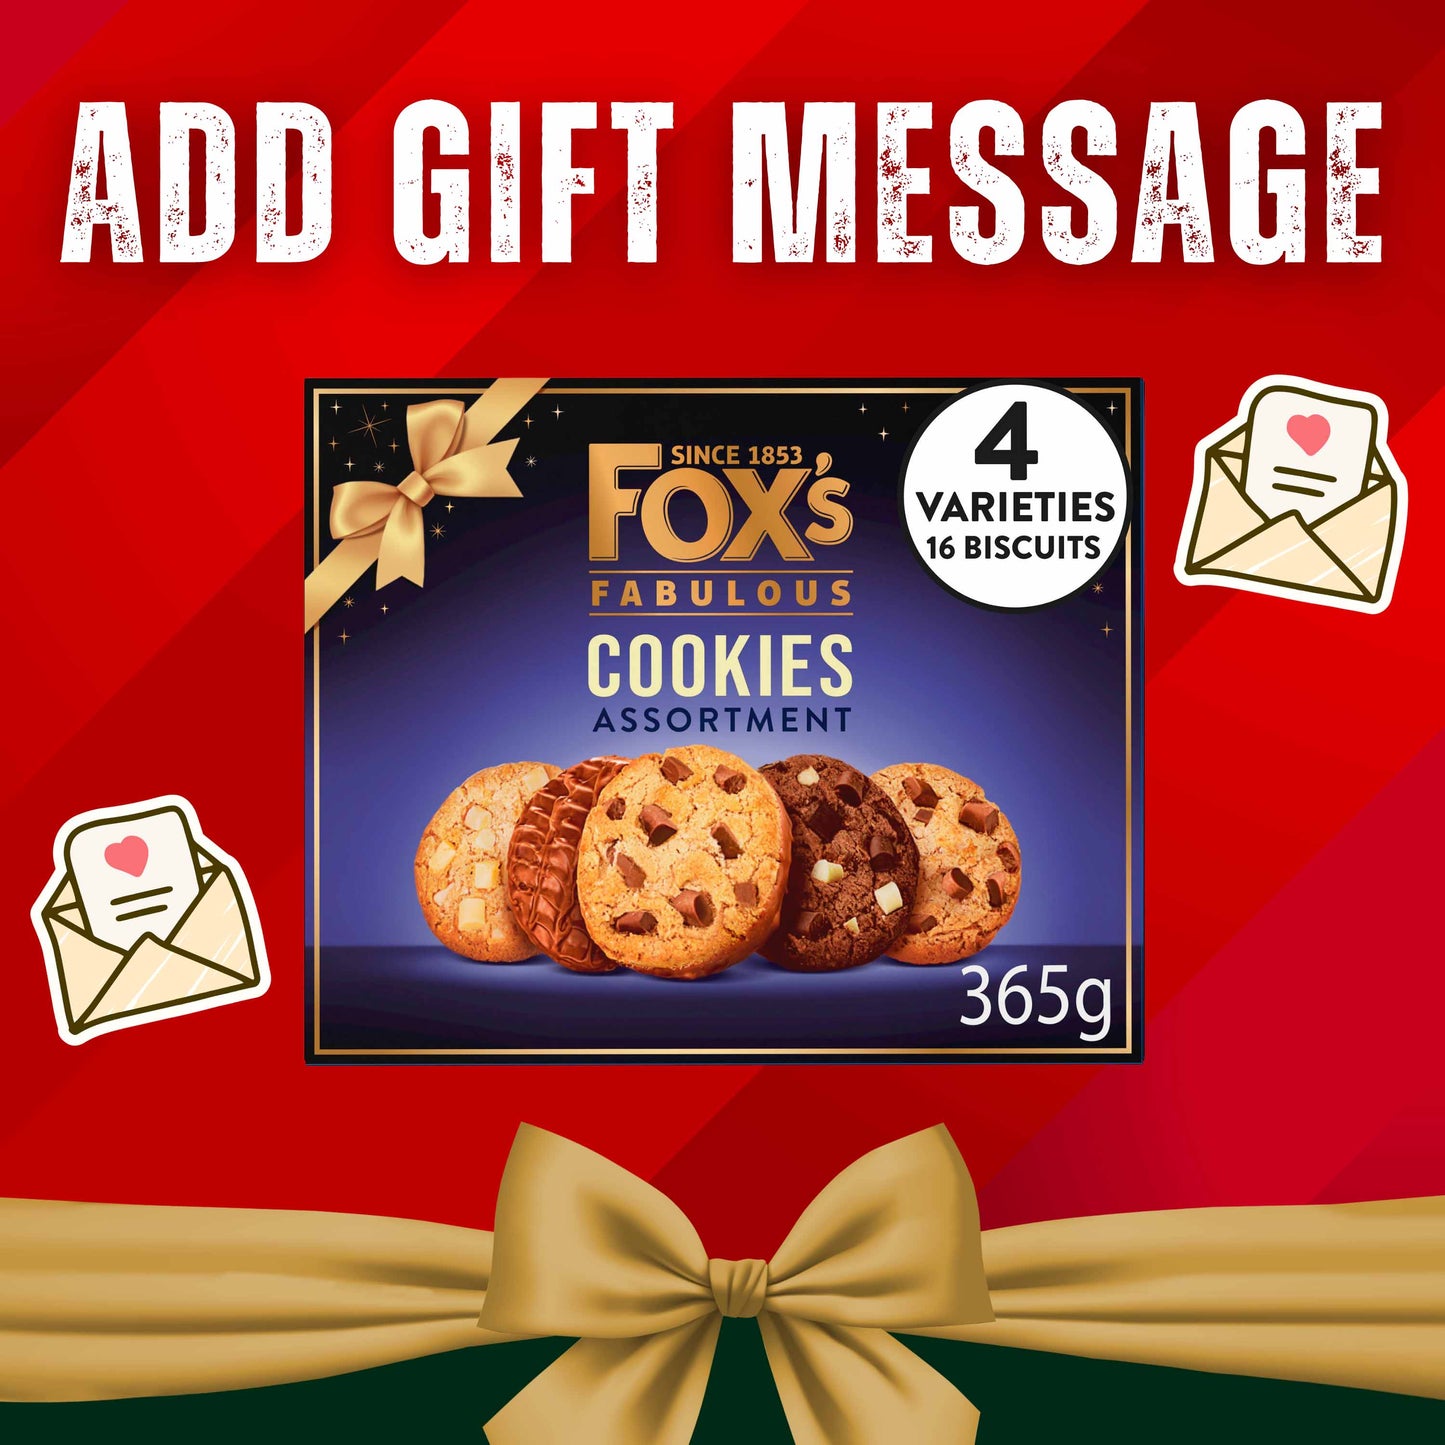 Fox's Fabulous Cookies Assortment 365g - British Snacks